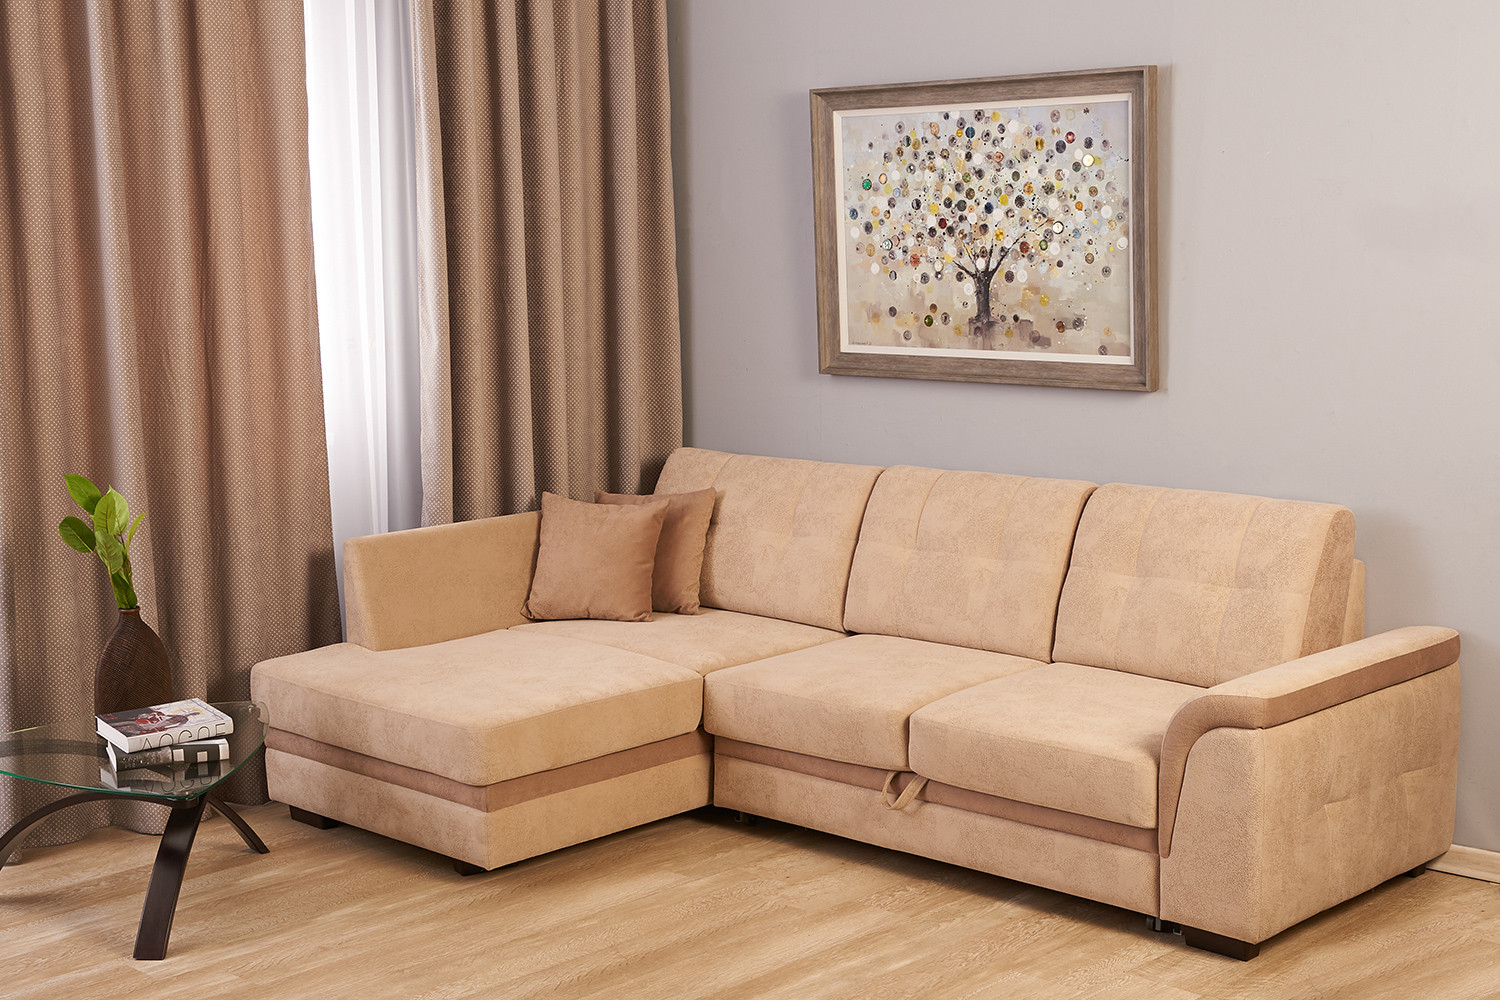 модели угловых диванов для зала